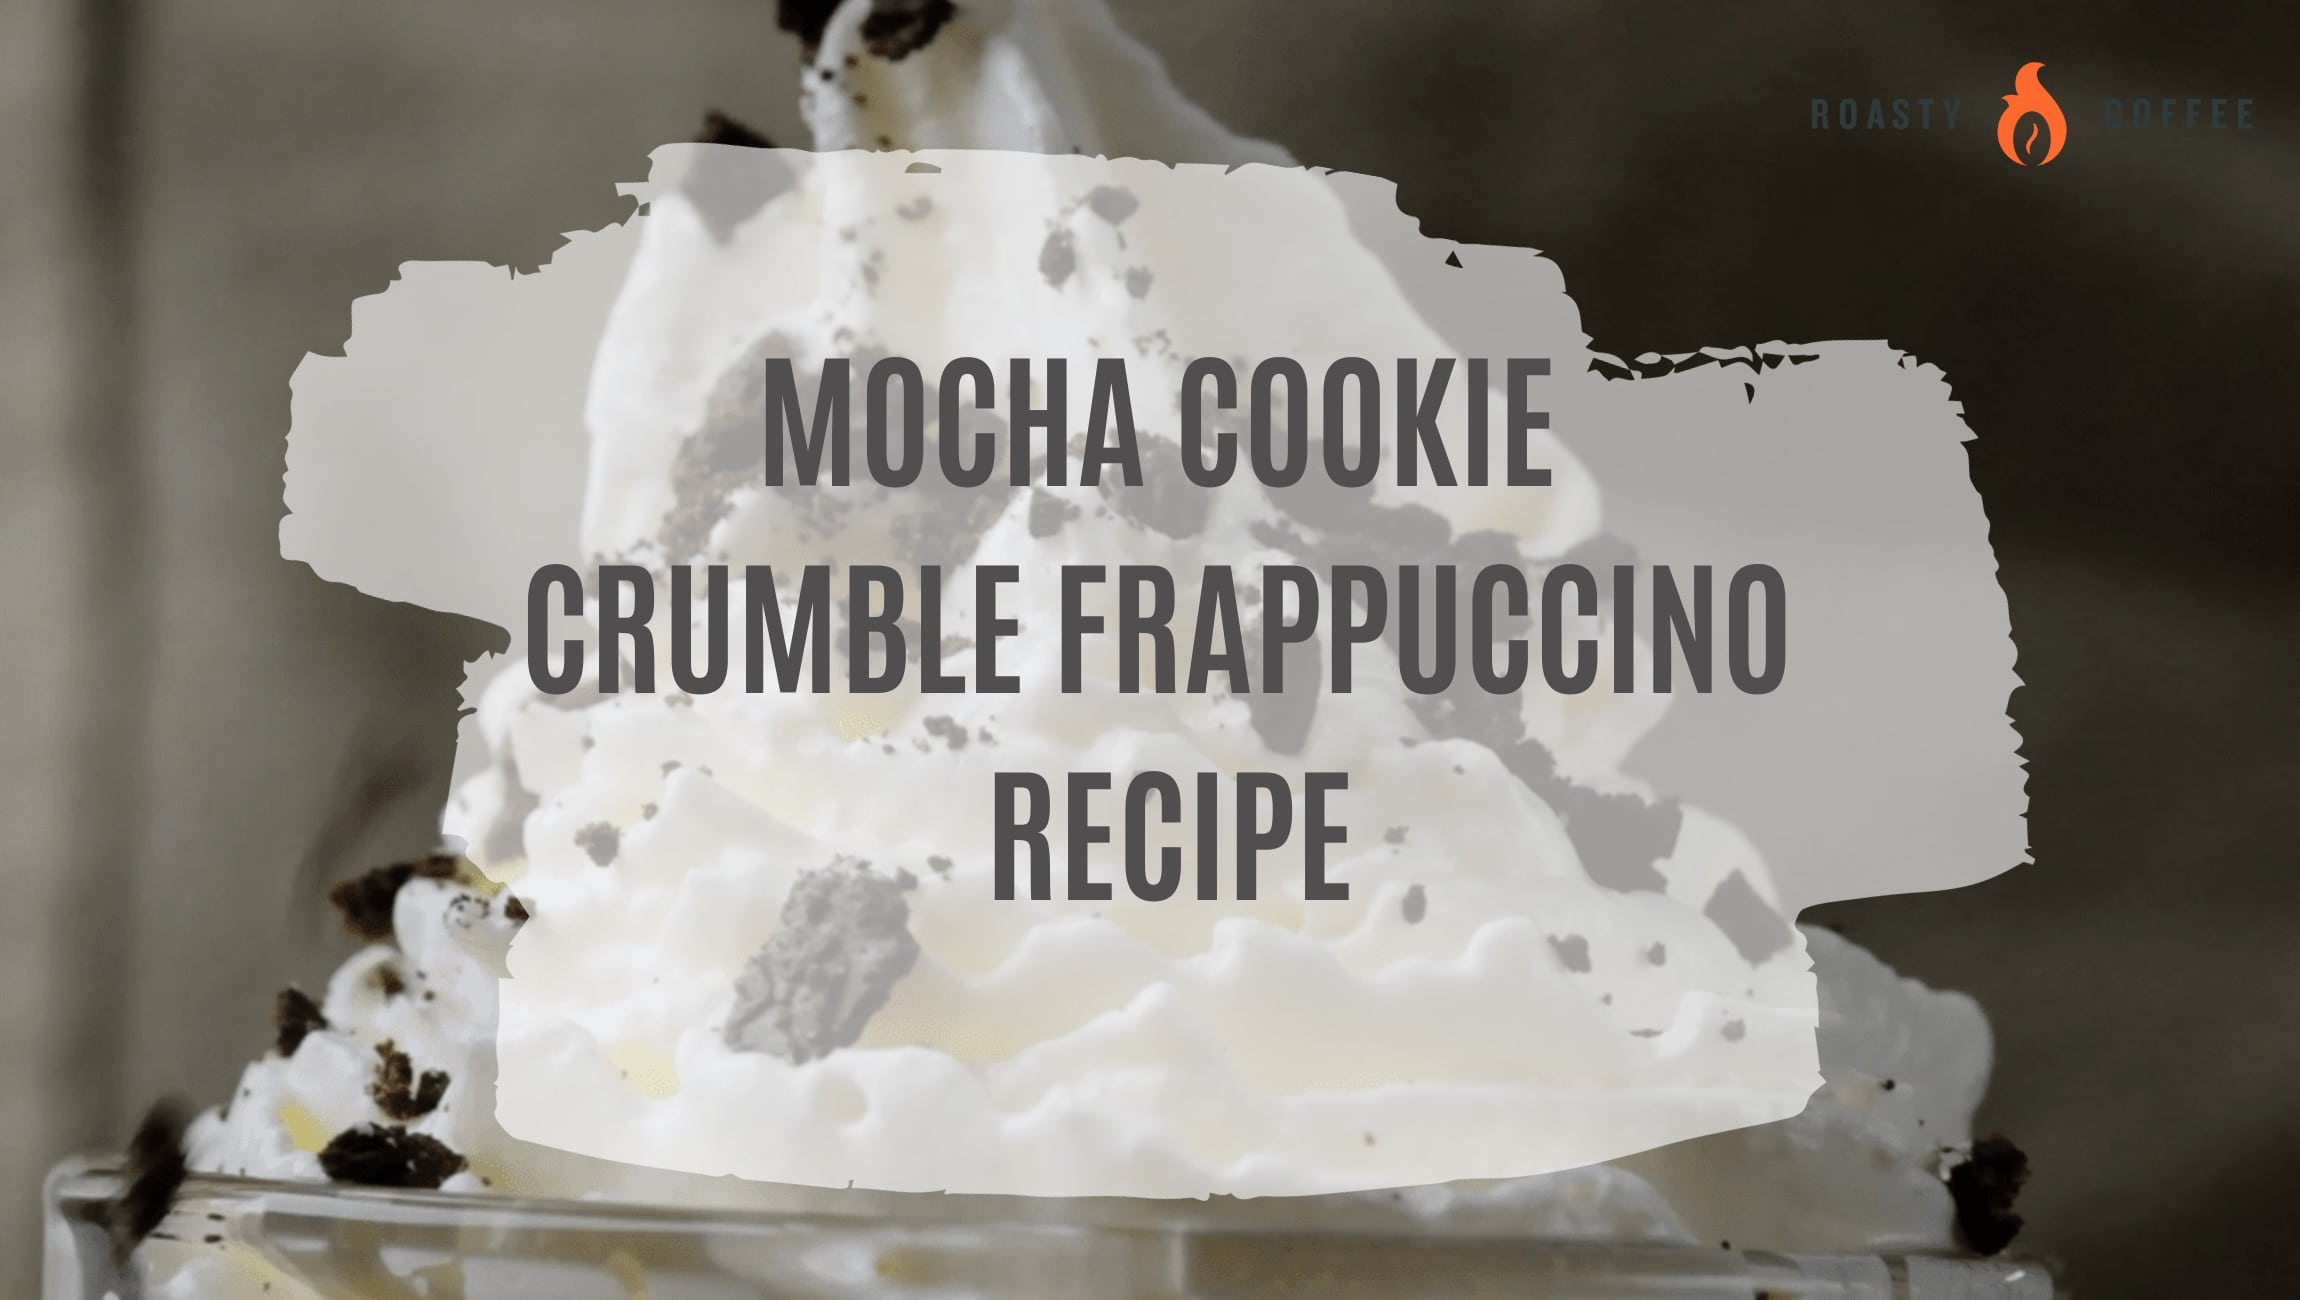 Deliciosa receta de frappuccino con crumble de galleta y moca de Starbucks